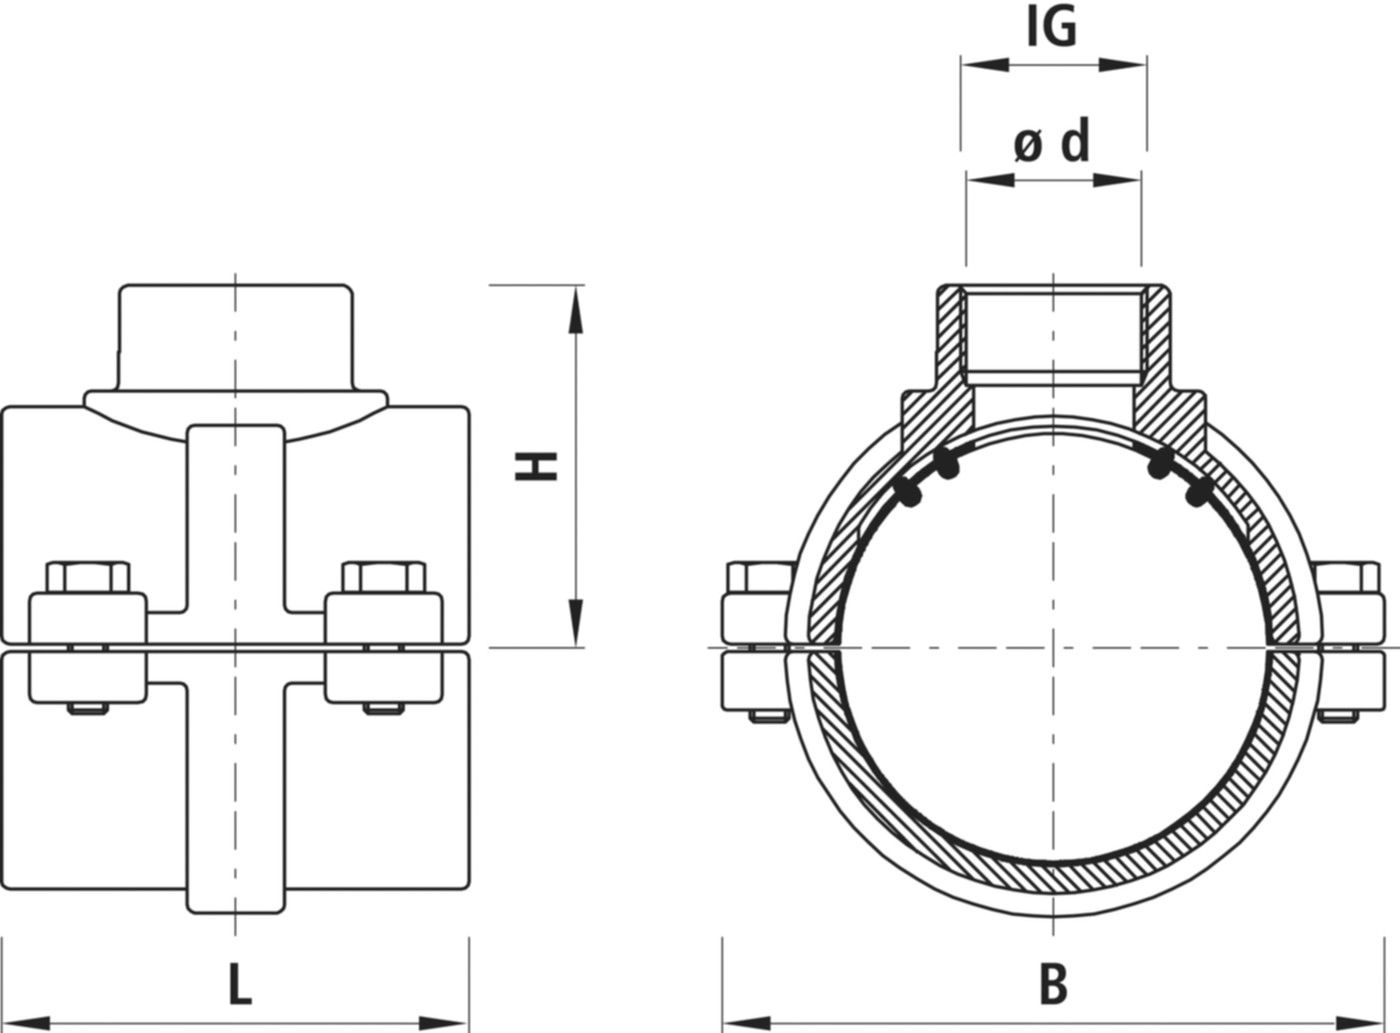 Haku-Anbohrschelle mit IG für Gas 5255 d 160mm - 2" - Hawle Hausanschluss- und Anbohrarmaturen